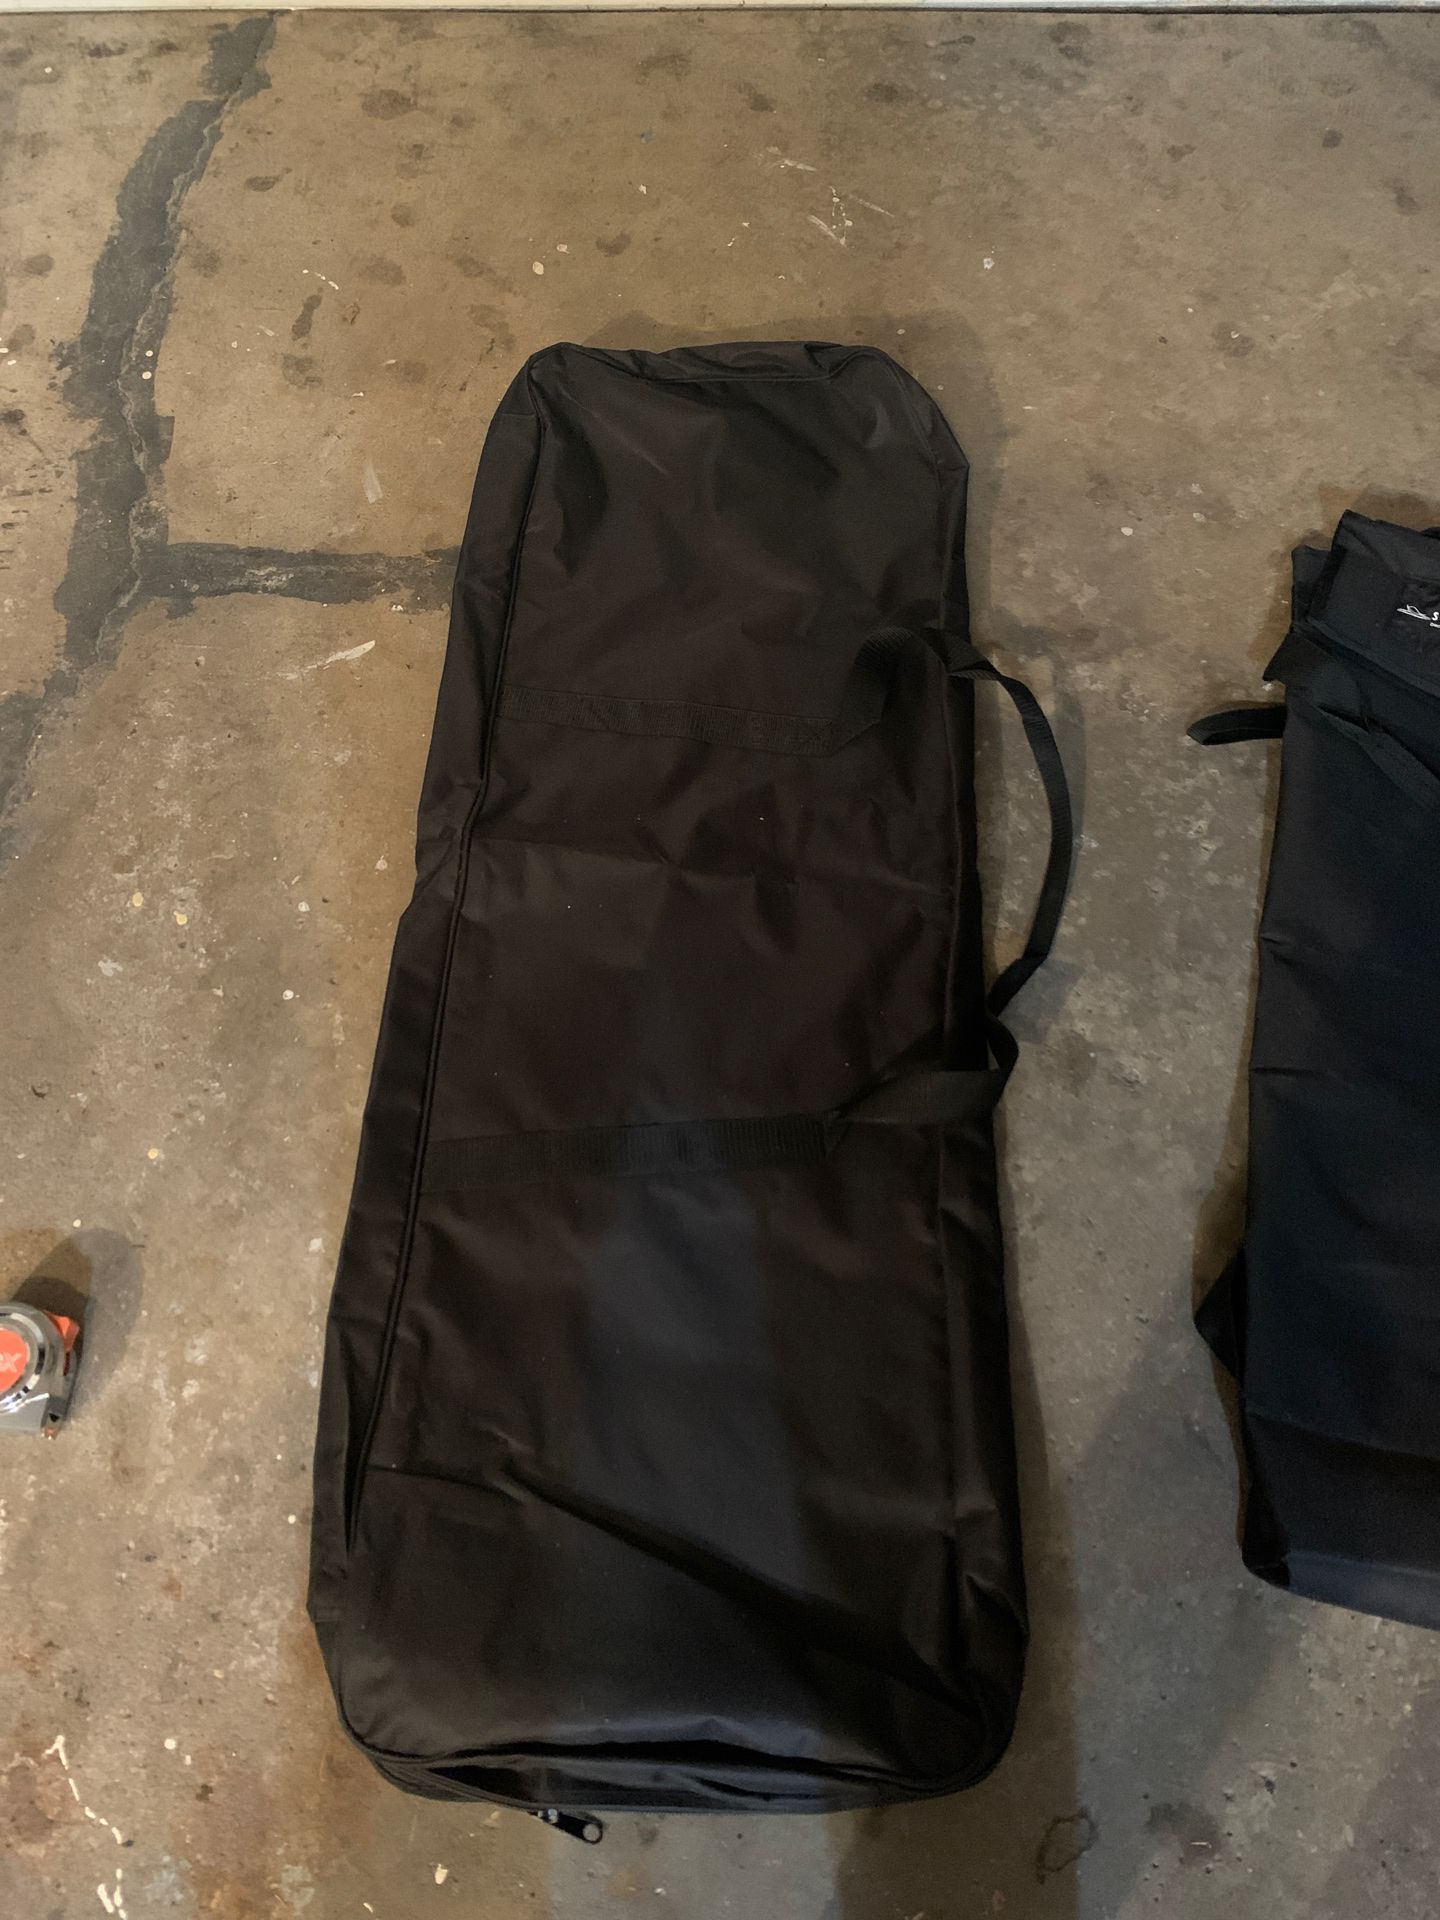 48”X16” New Bag